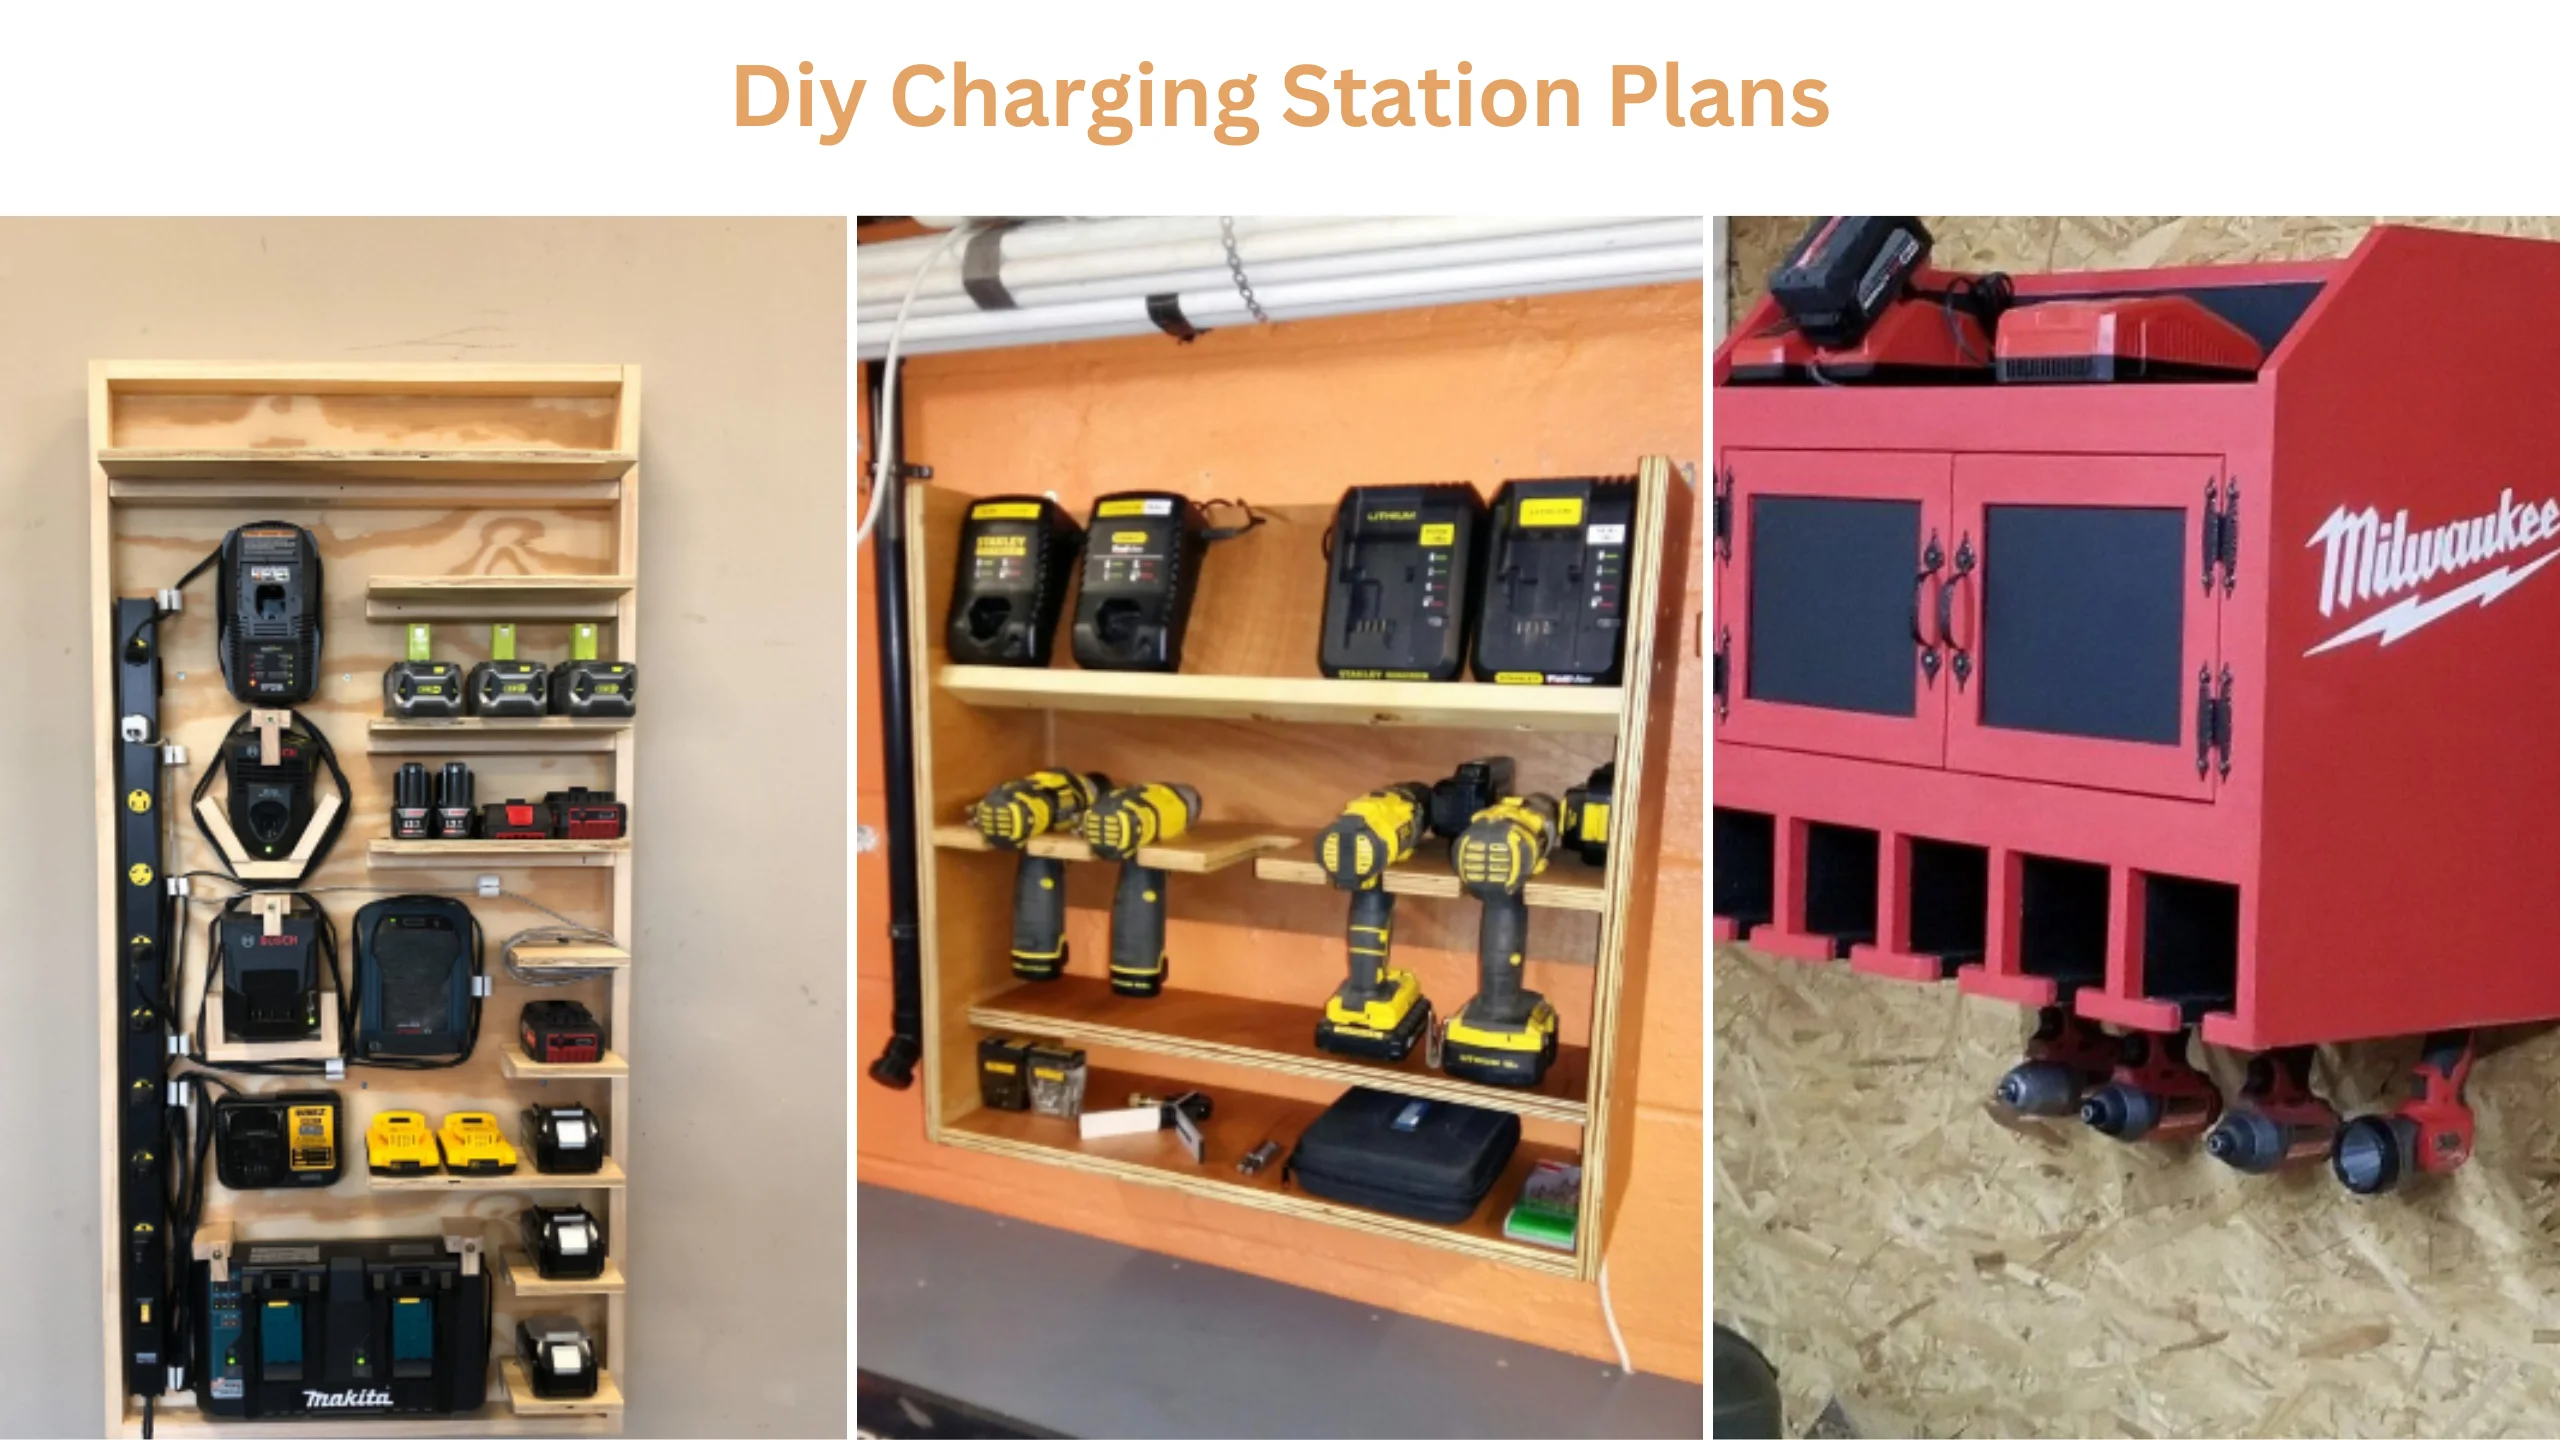 Diy charging station plans